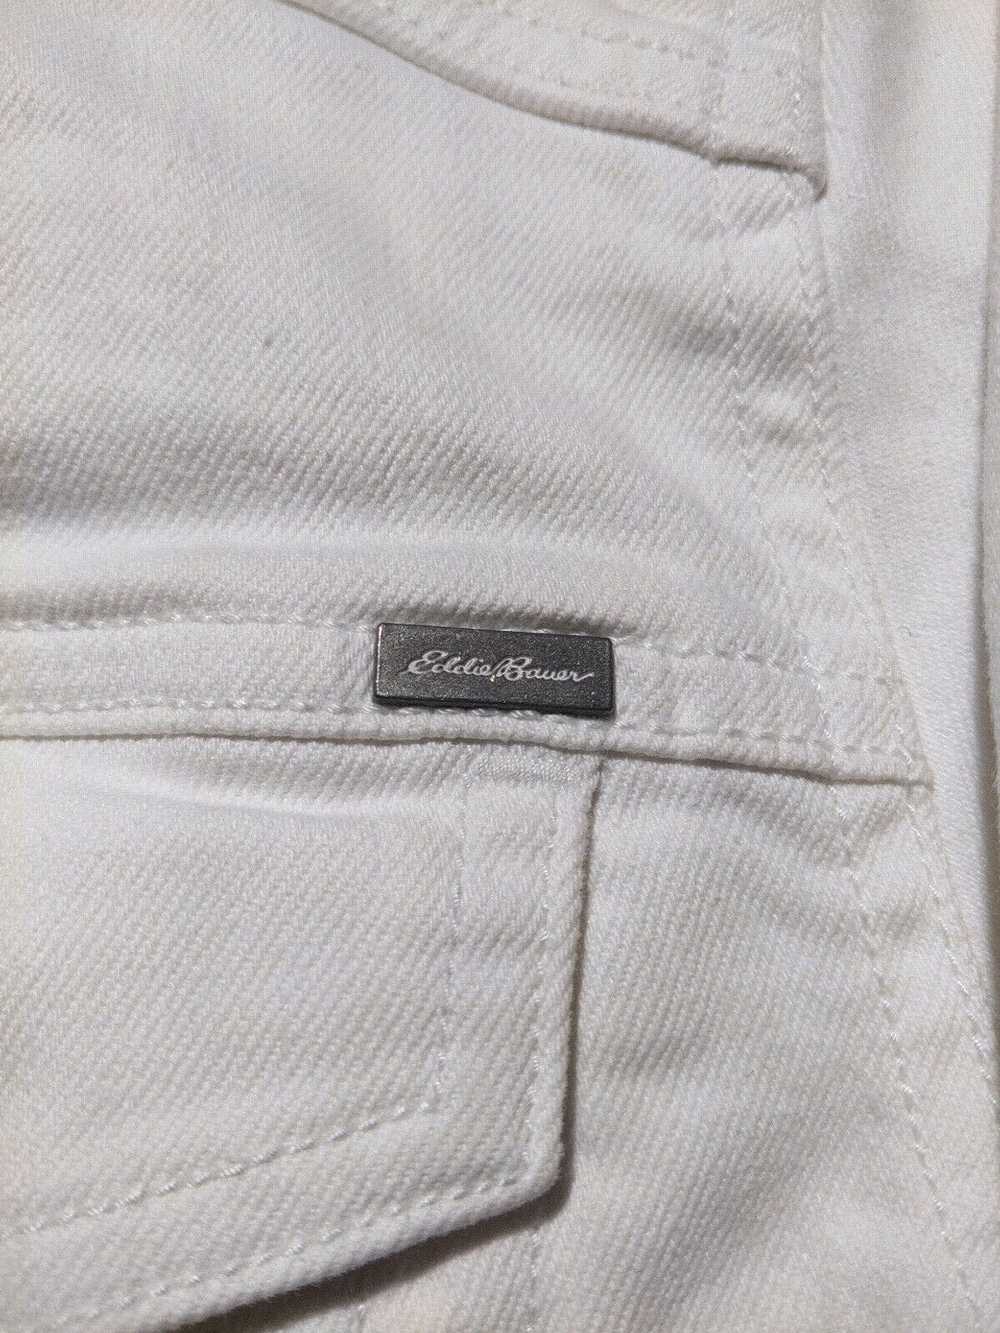 Eddie Bauer Medium White Vintage 2000s Denim Jean… - image 2